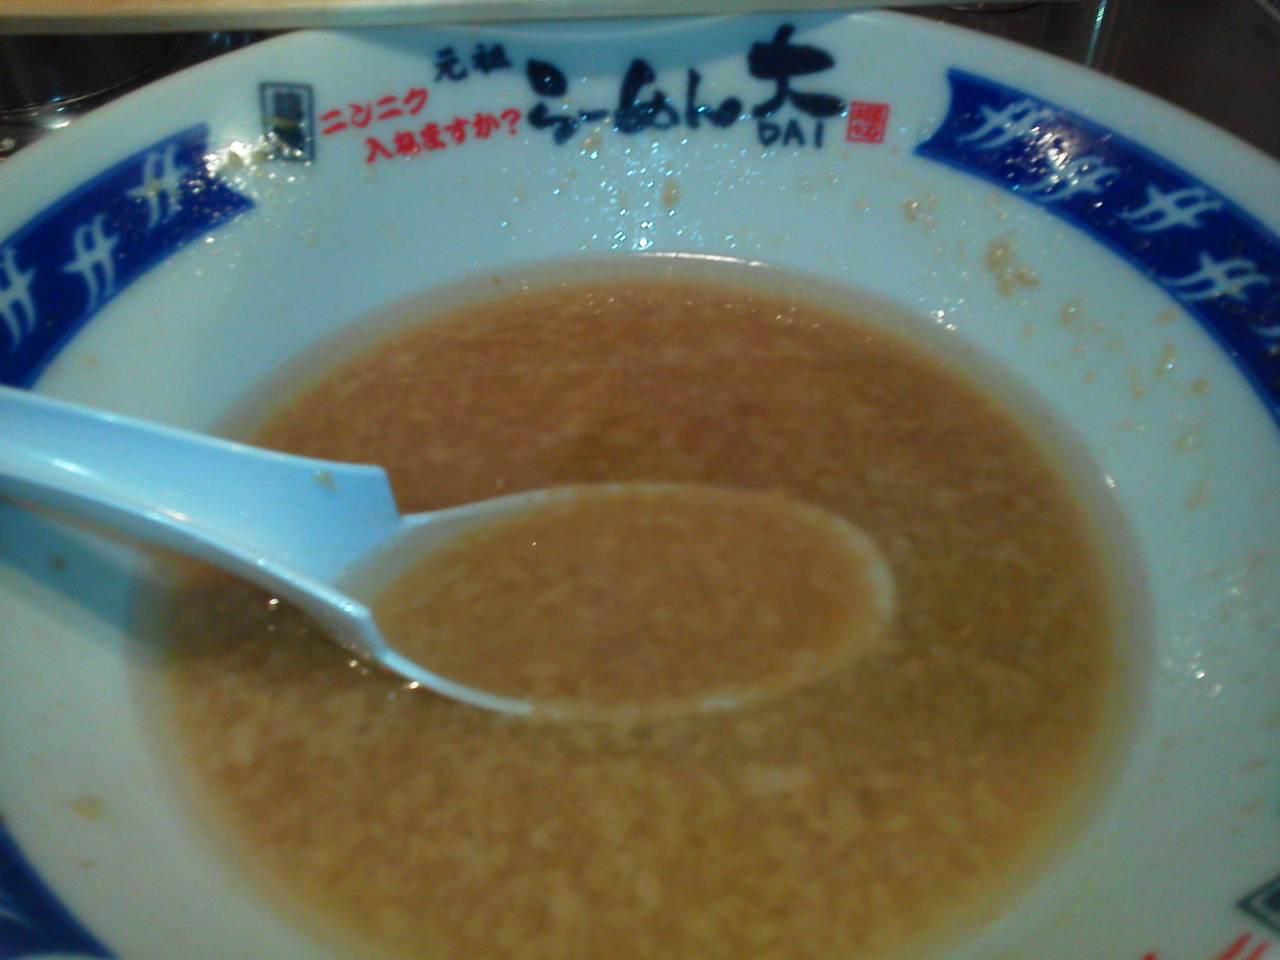 その9  スープも蒲田店と同じ感じかな。 が、画像にもはっきり写